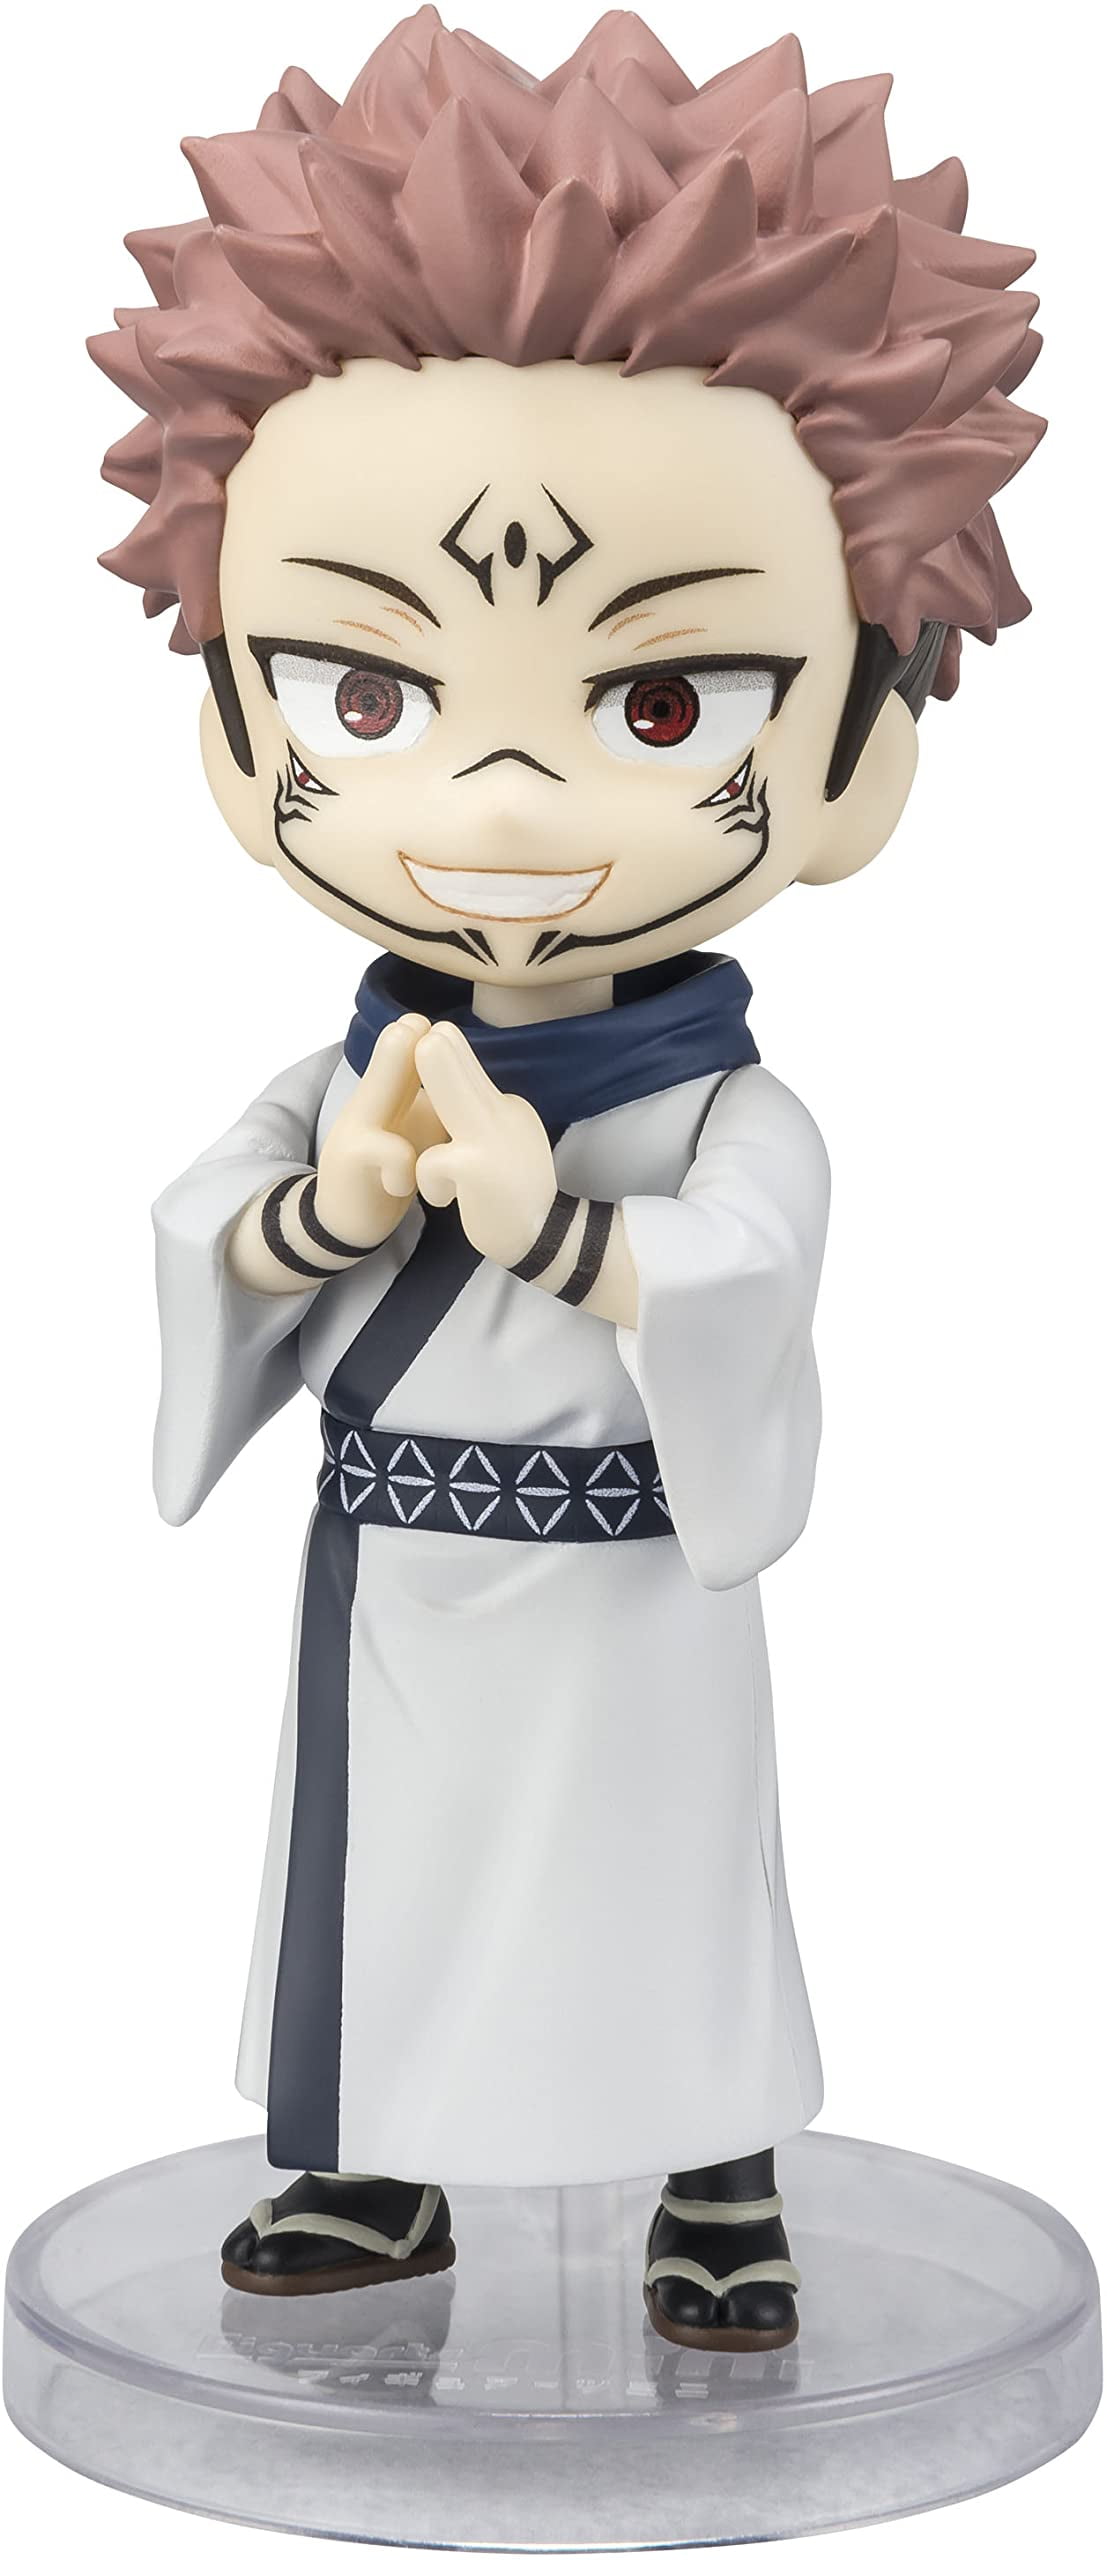 Custom MOC Same as Major Brands! Anime Jujutsu Kaisen Figurine Cute Gojo  Satoru Itadori Yuji Look Up PVC Anime Action Figure 